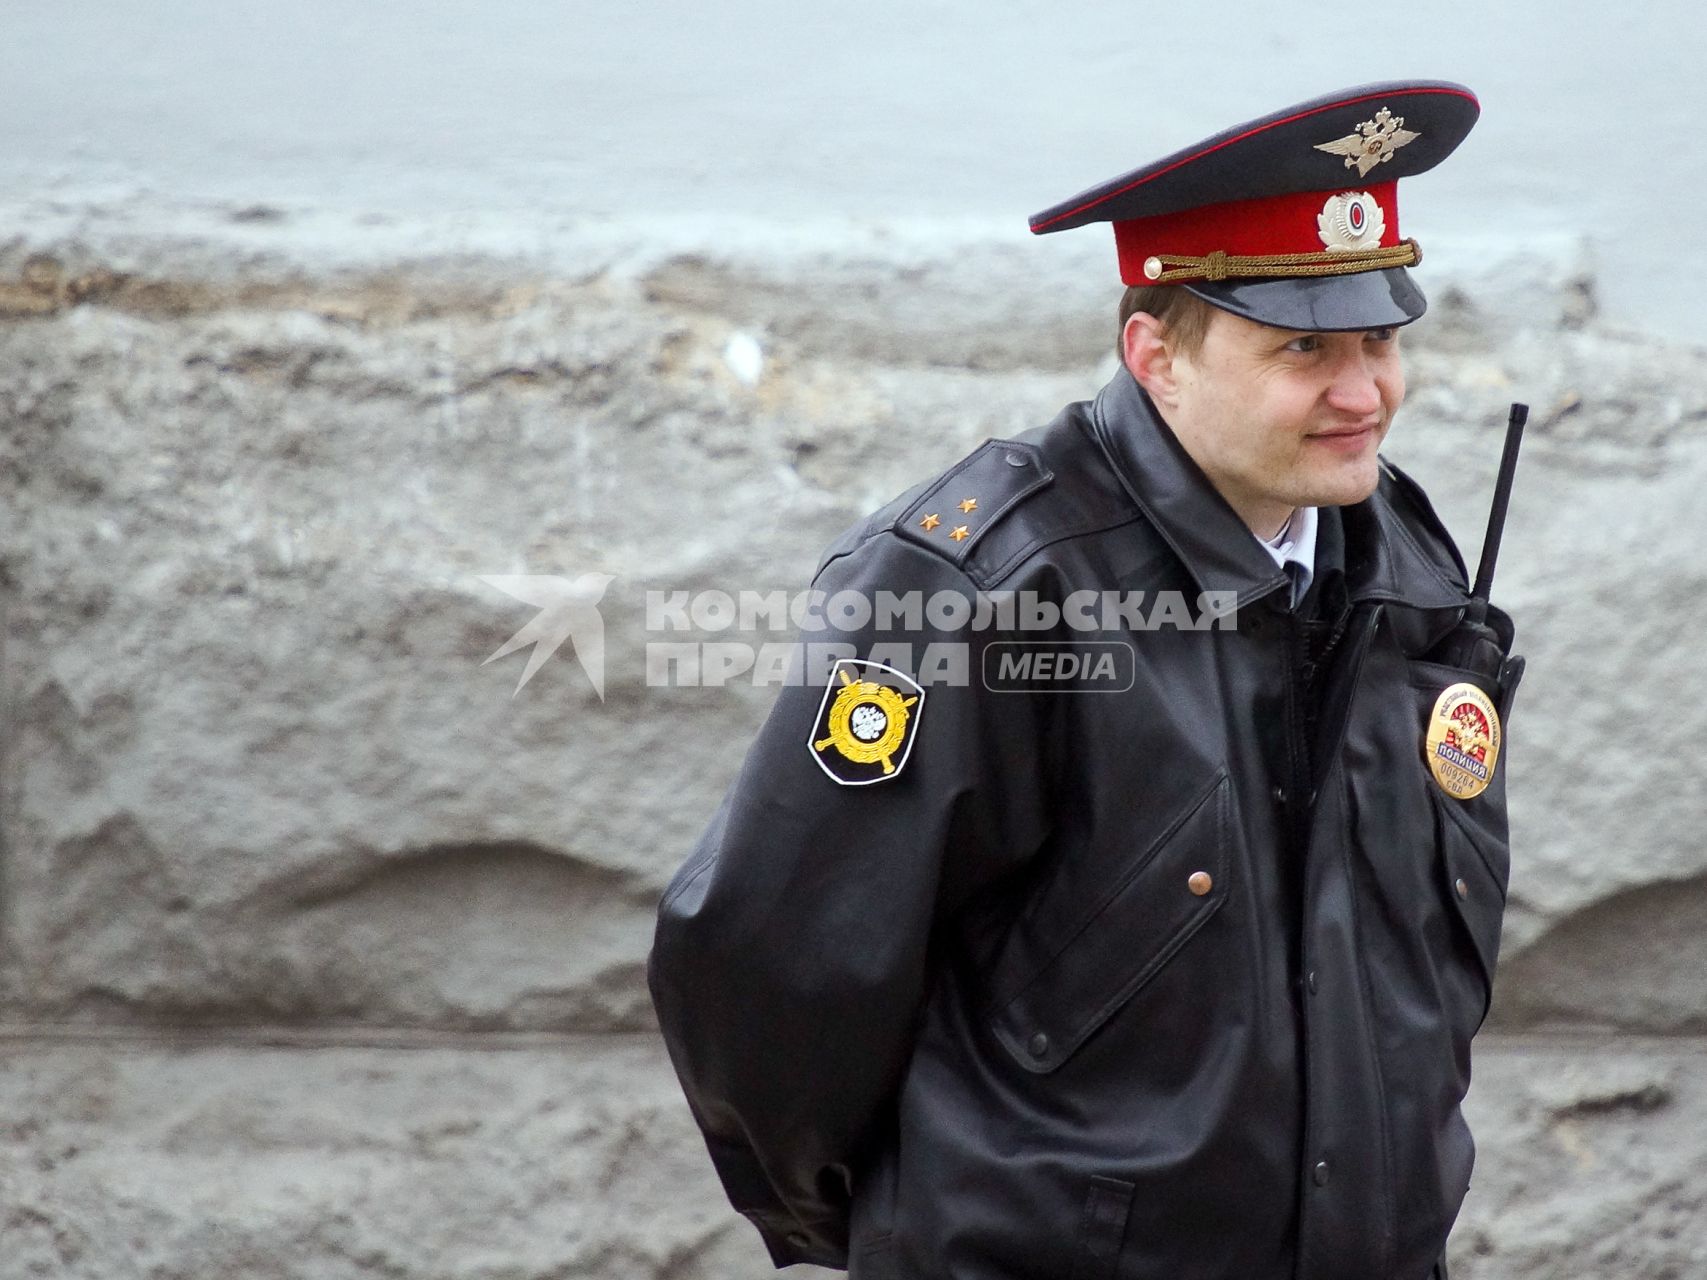 Празднование 1 мая в Екатеринбурге. На снимке: полицейский в оцеплении.